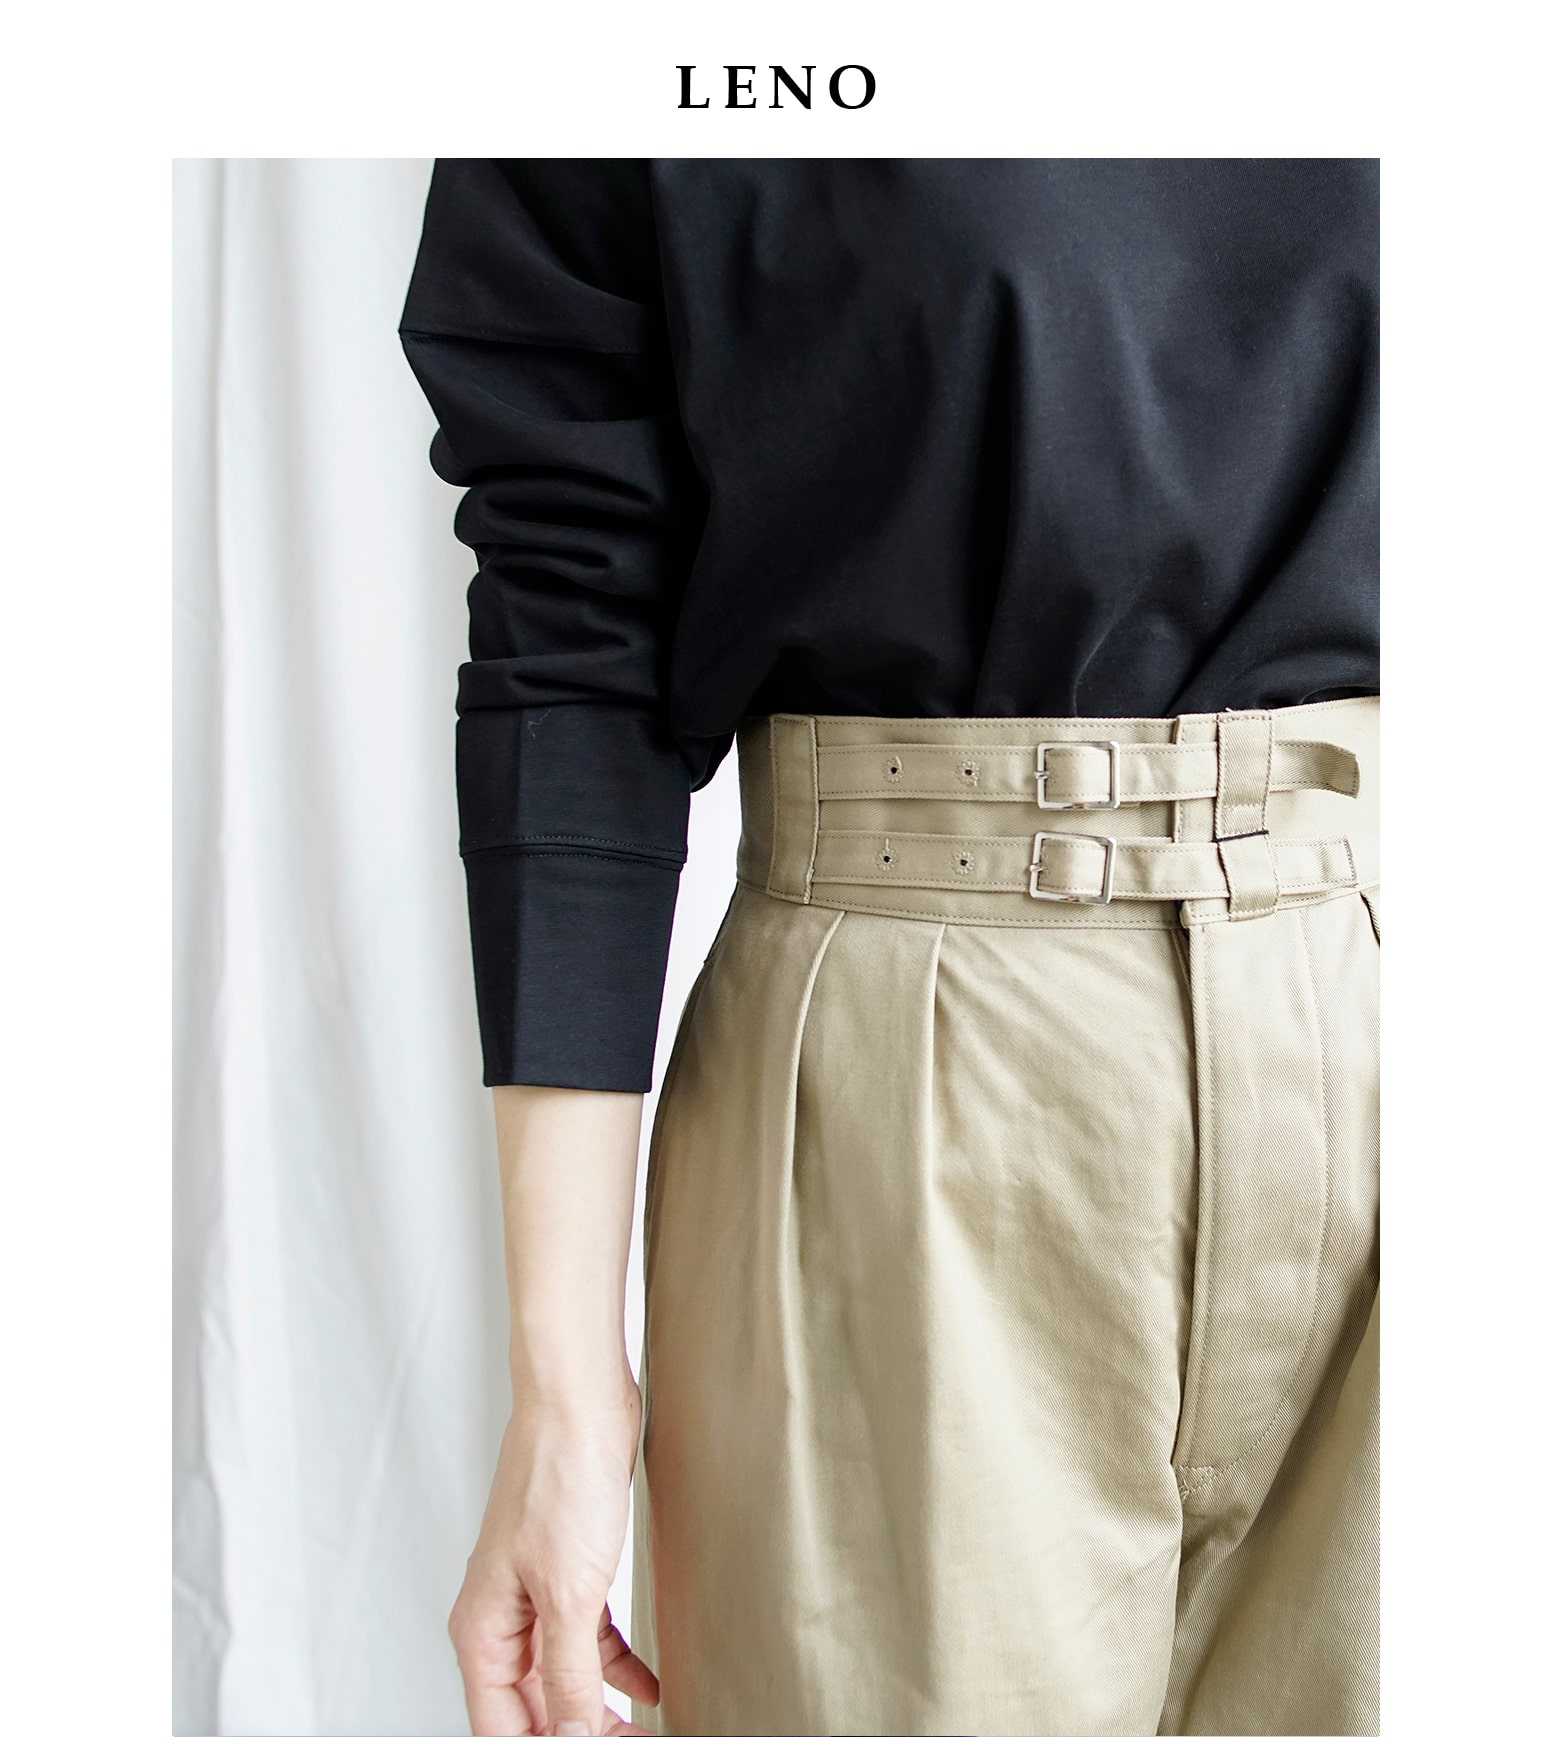 【2022ss新作】LENO(リノ)ダブルベルトグルカトラウザーズ“Double Belted Gurkha Trousers”  leno-pt001【サイズ交換初回無料】